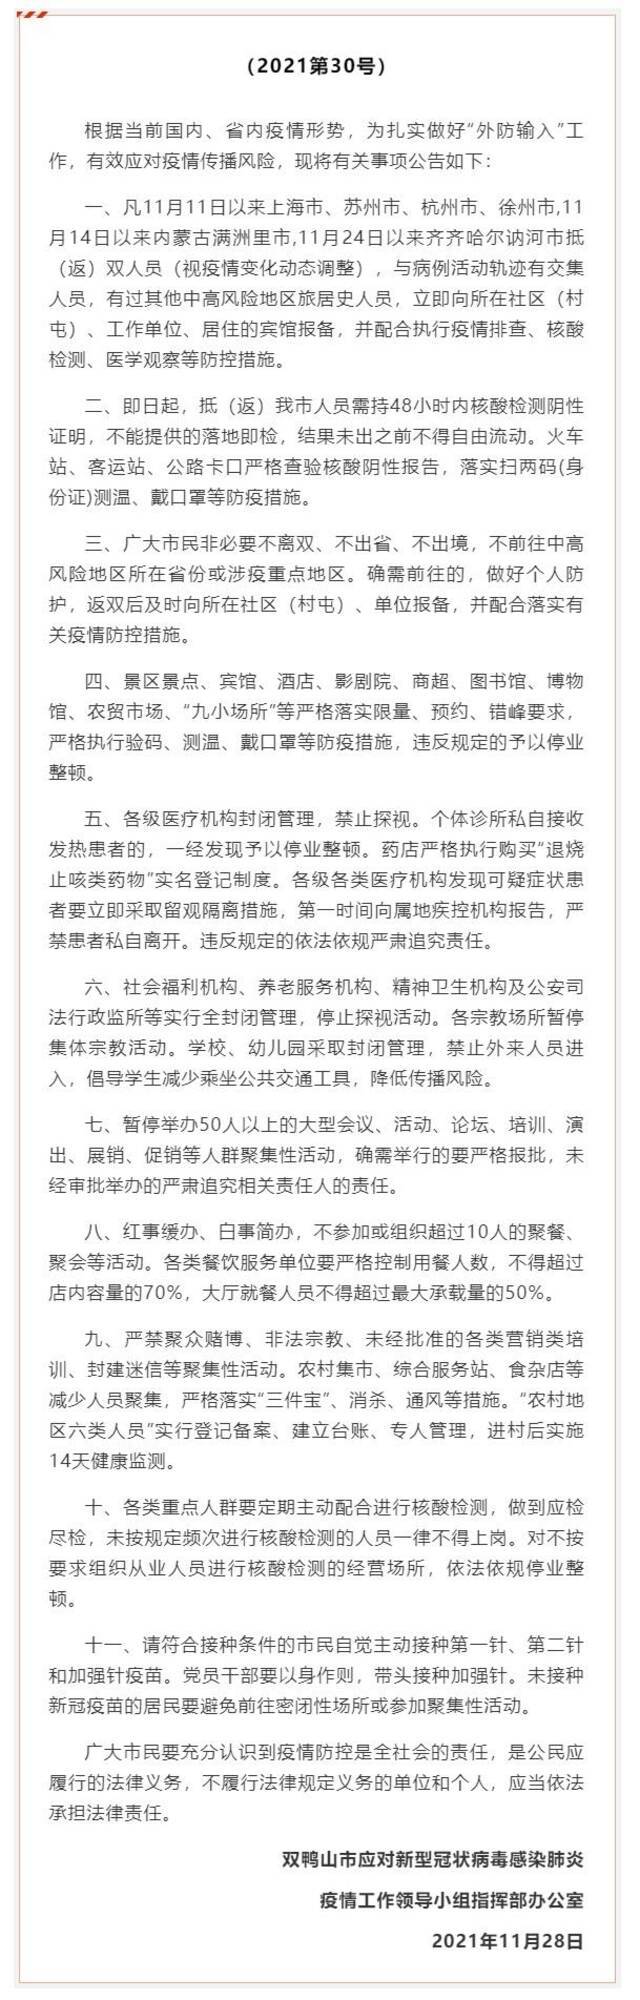 黑龙江省两地提升管控 进出须持48小时核酸检测阴性证明